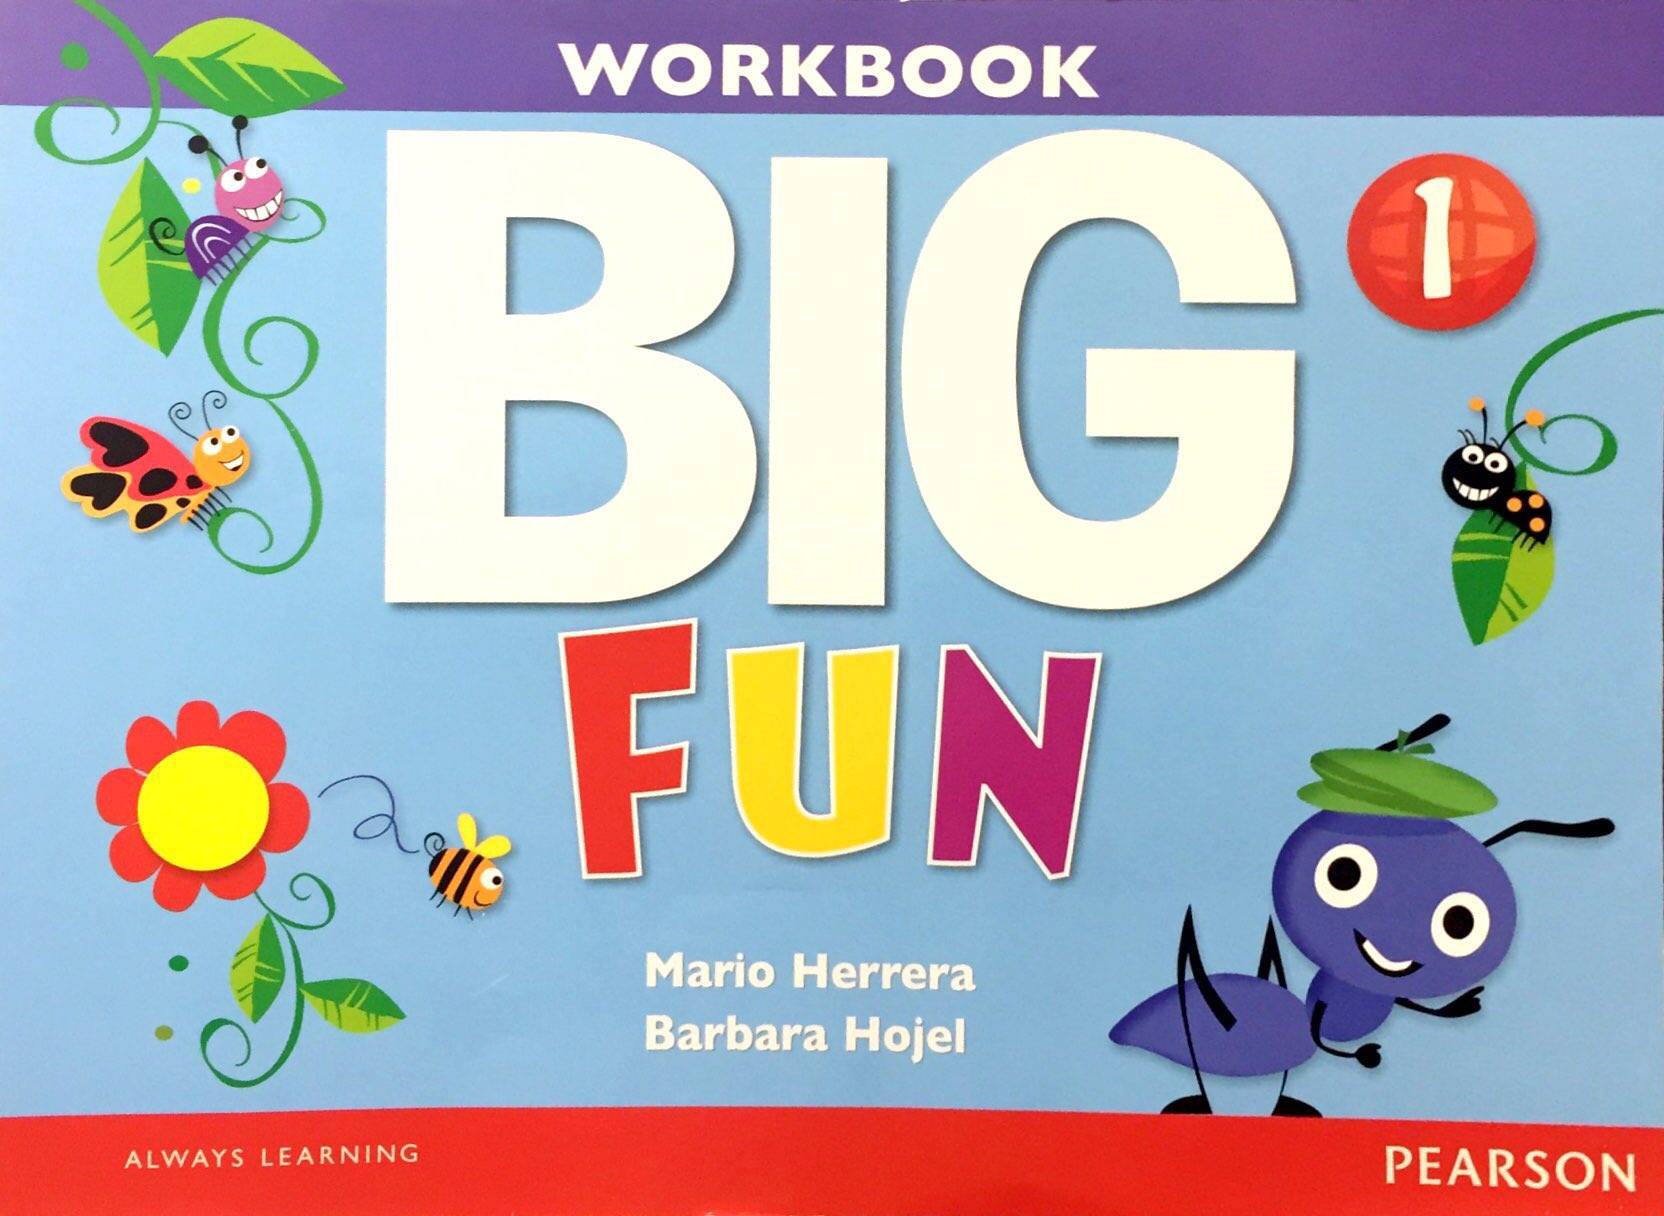 Big Fun 1 Workbook with Audio CD